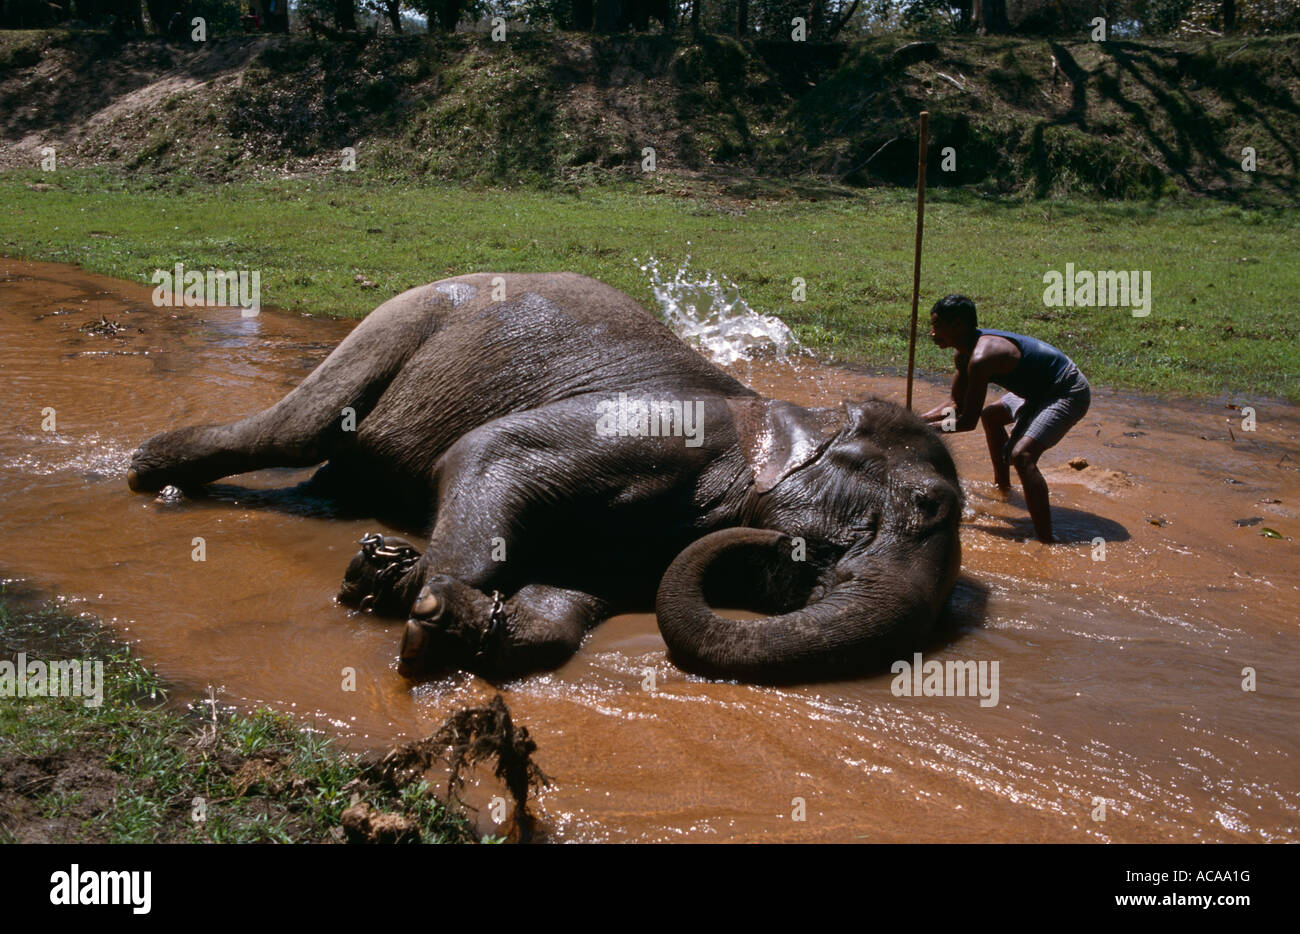 Les éléphants indiens Elaphus maximus étant lavé par son cornac dans le fleuve Ganga Charan Bandavgarh NP le Madhya Pradesh Inde Banque D'Images